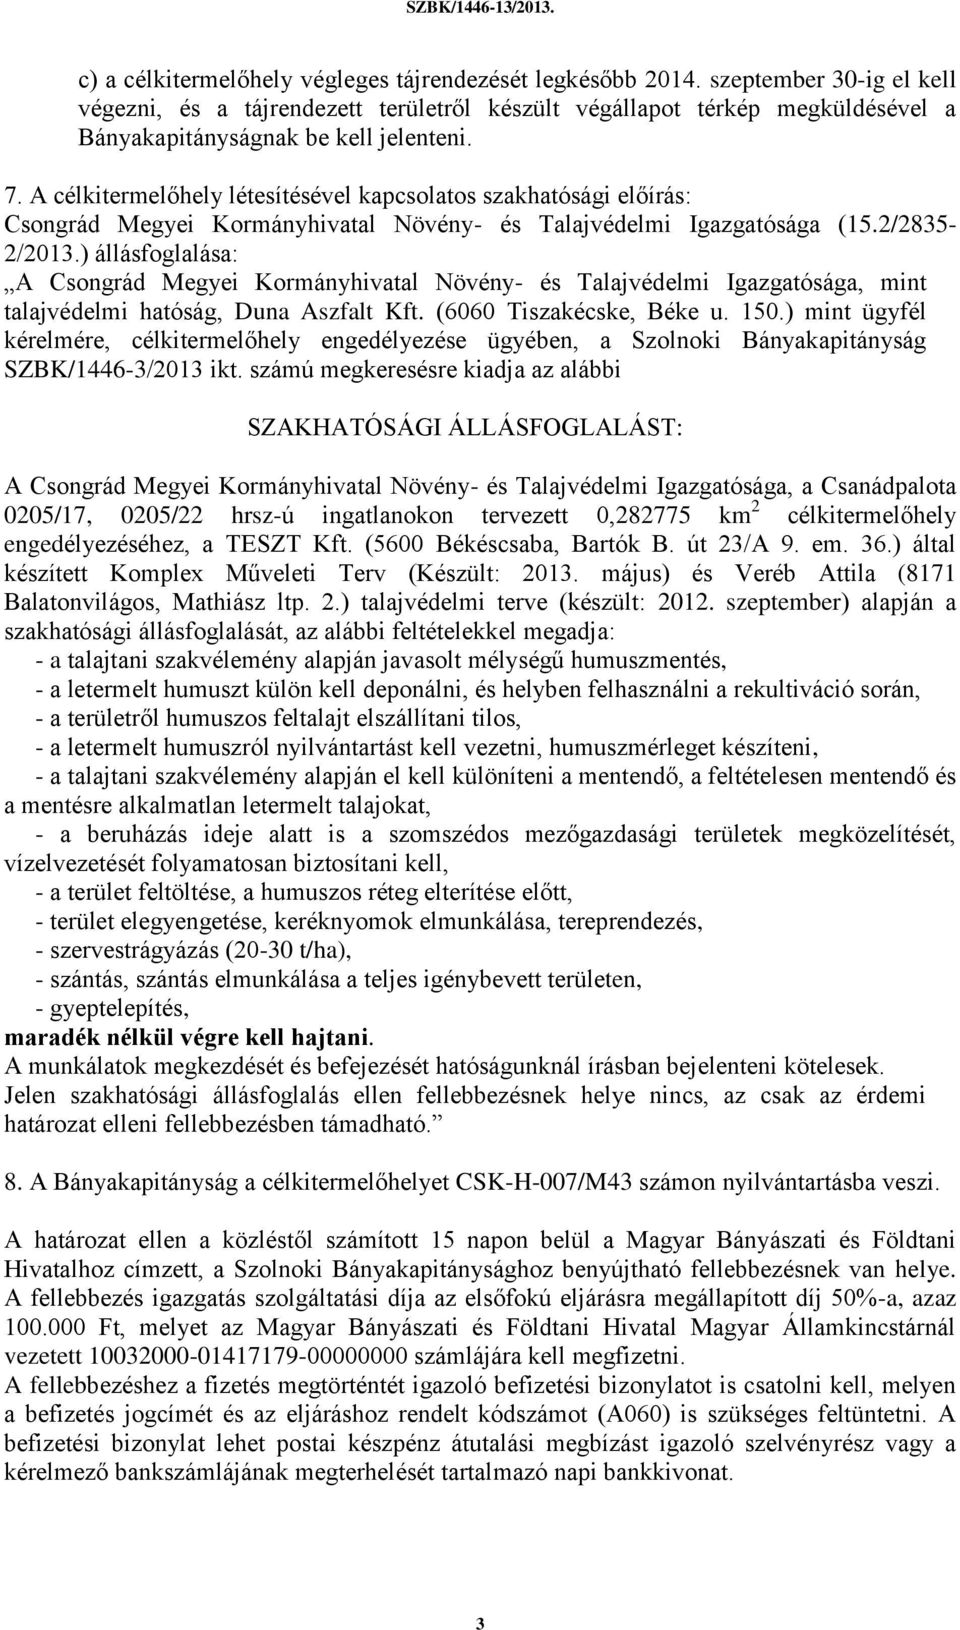 A célkitermelőhely létesítésével kapcsolatos szakhatósági előírás: Csongrád Megyei Kormányhivatal Növény- és Talajvédelmi Igazgatósága (15.2/2835-2/2013.